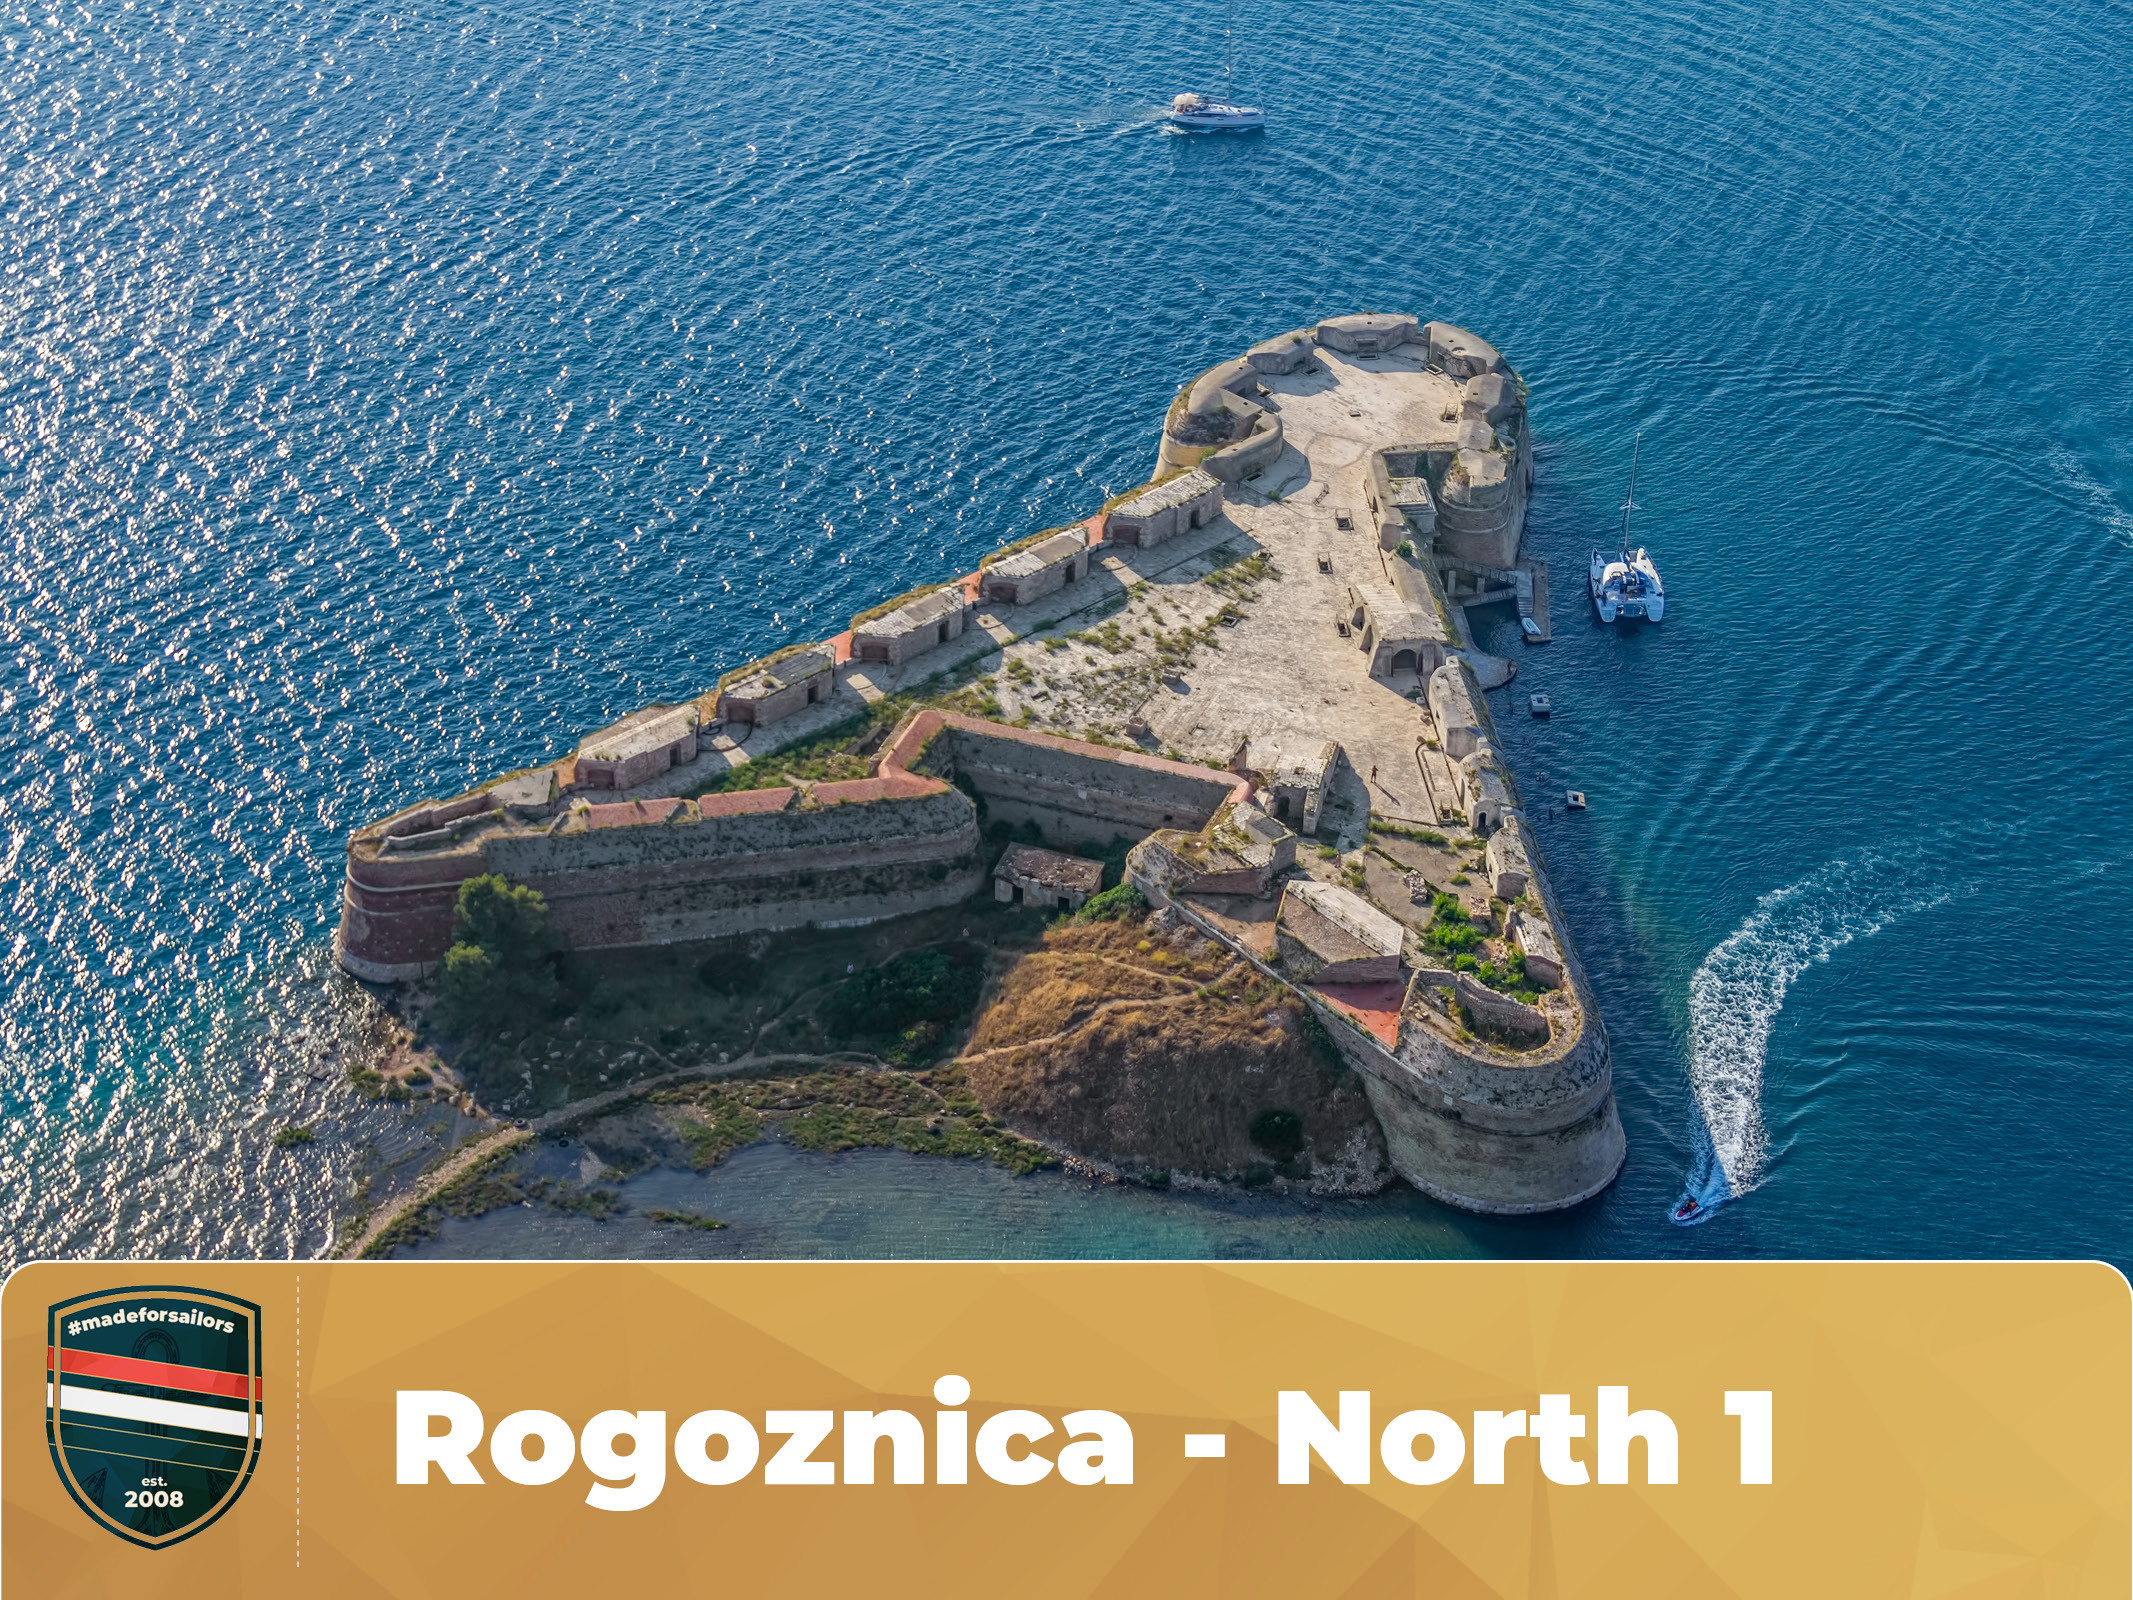 Rogoznica - North 1 Route